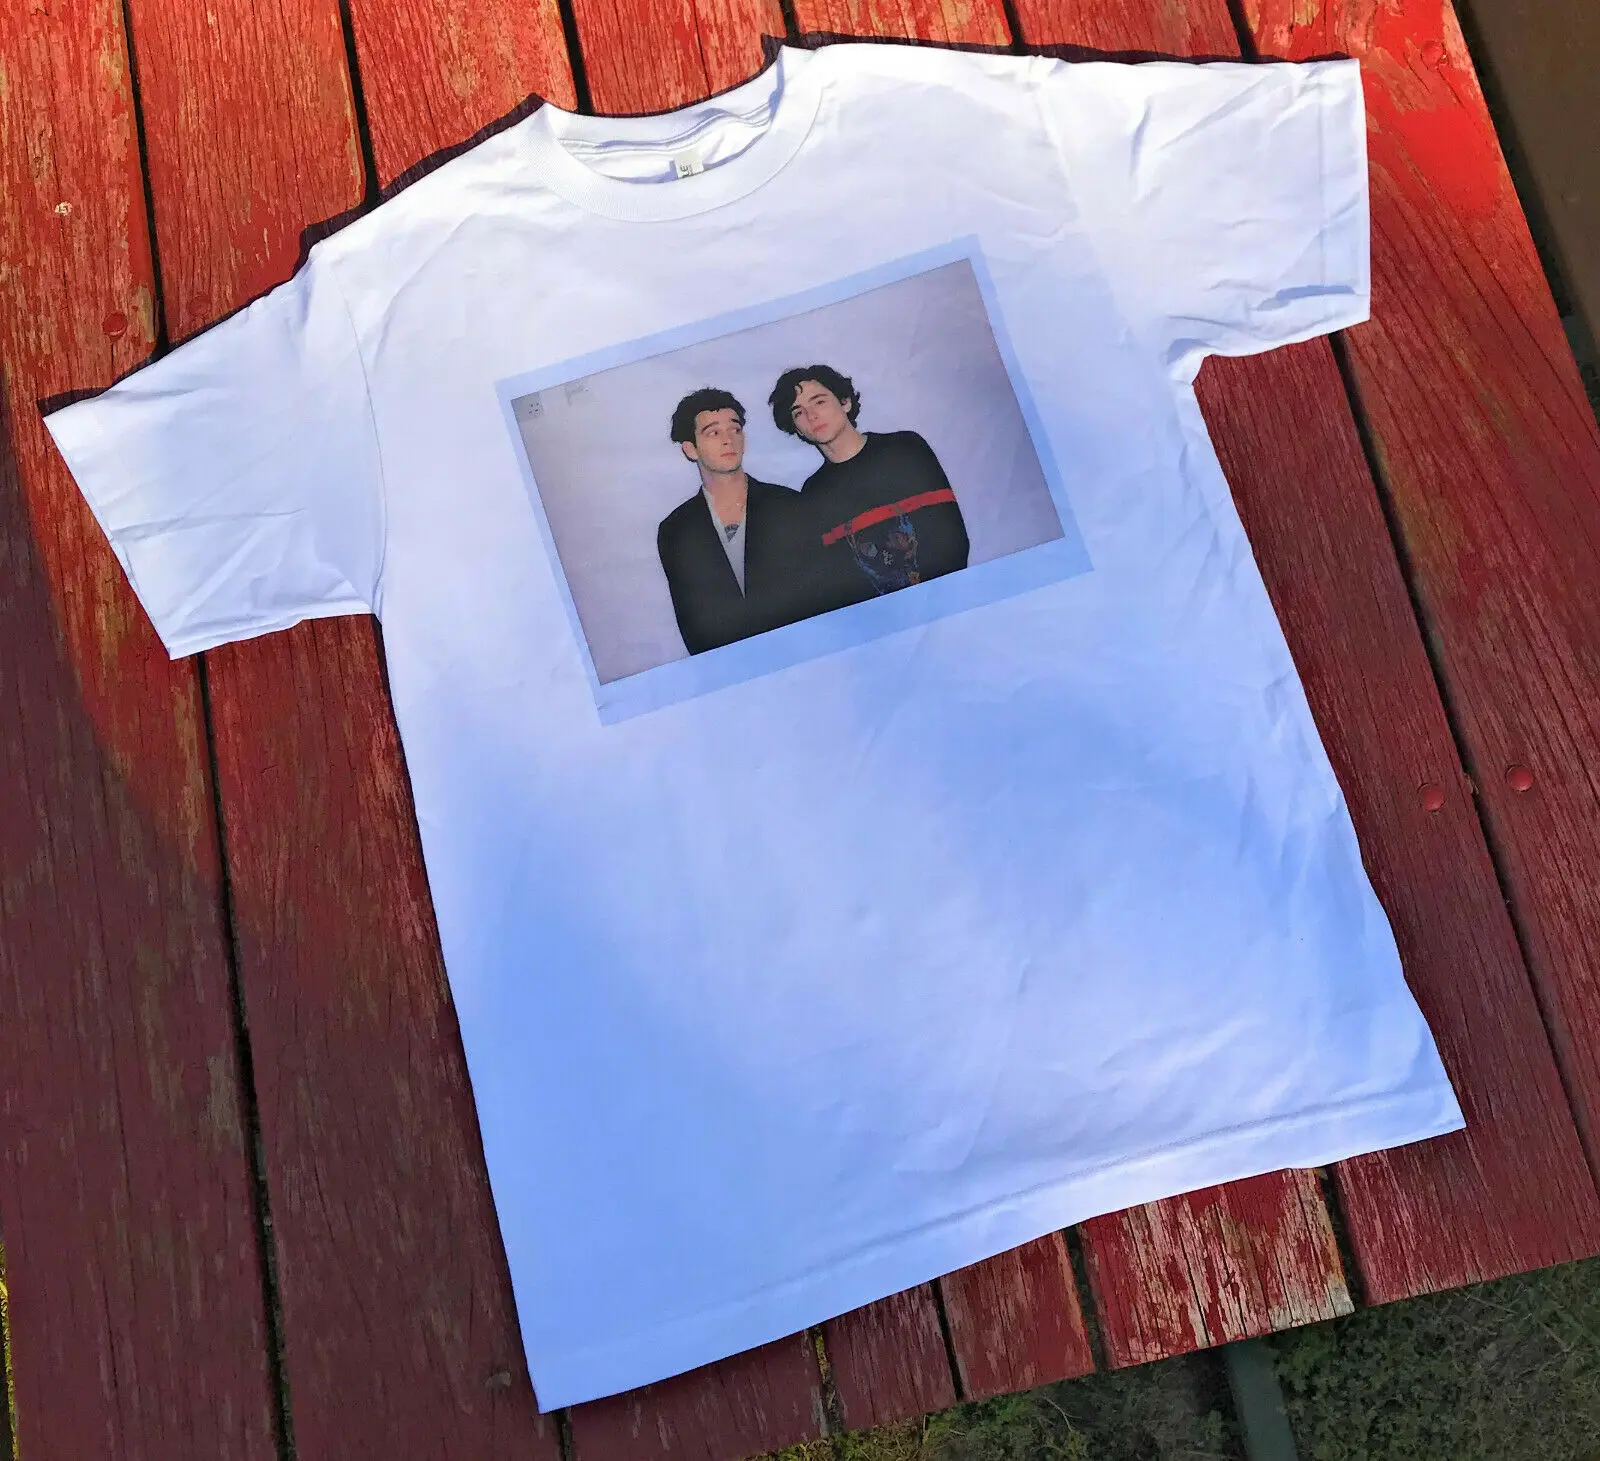 

The 1975 Inspired Matt Healy and Timothee Chalamet Shirt Men Short Sleeve Tee male brand teeshirt men summer cotton t shirt